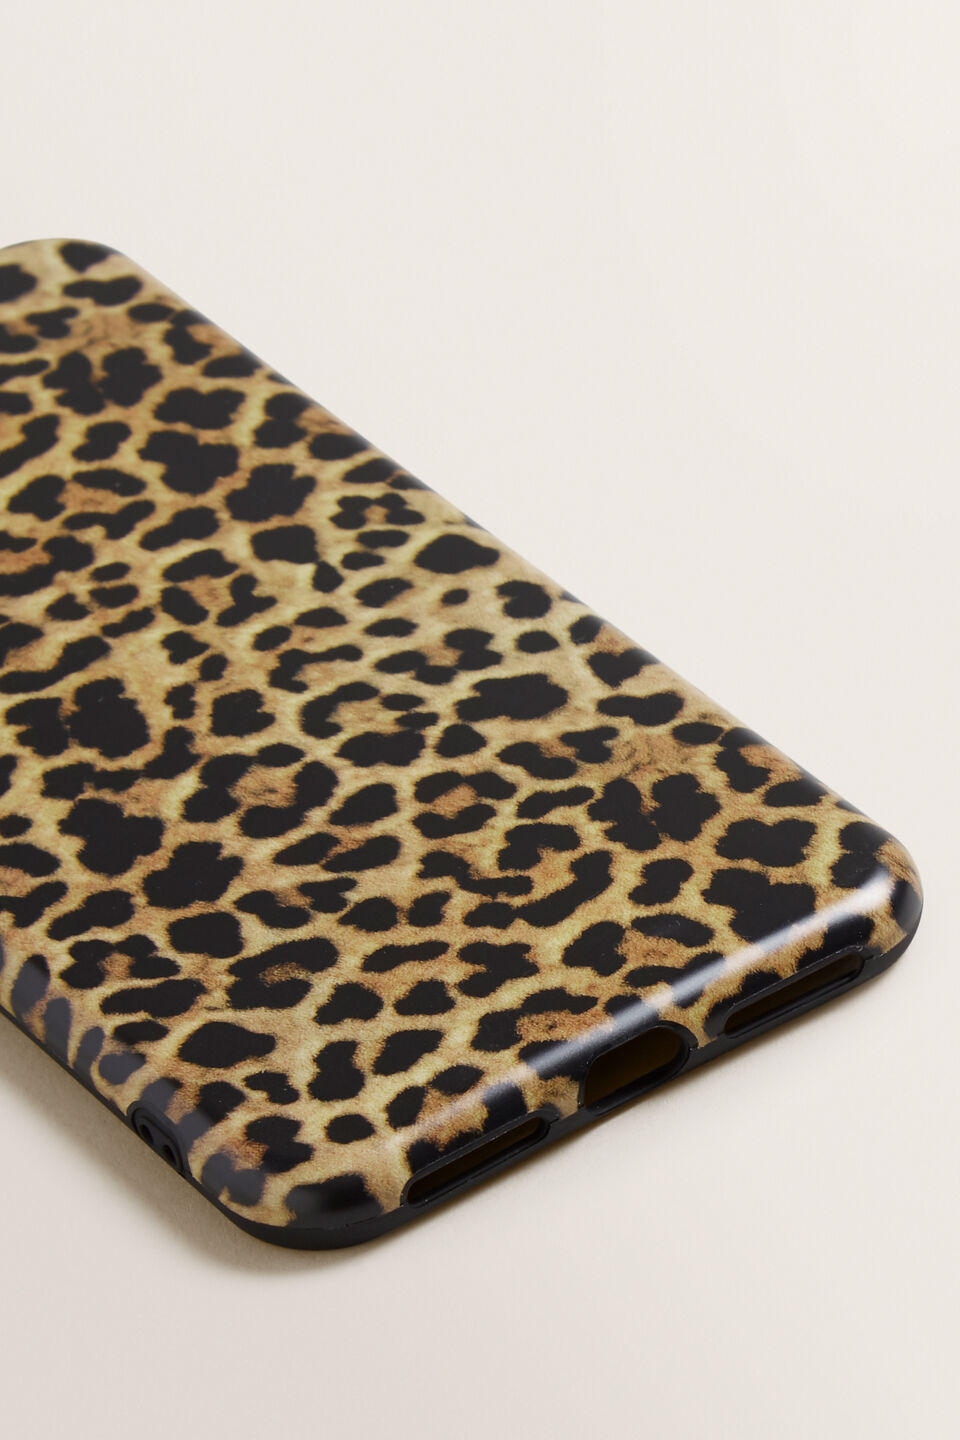 Printed Phone Case X/Xs Max  Leopard